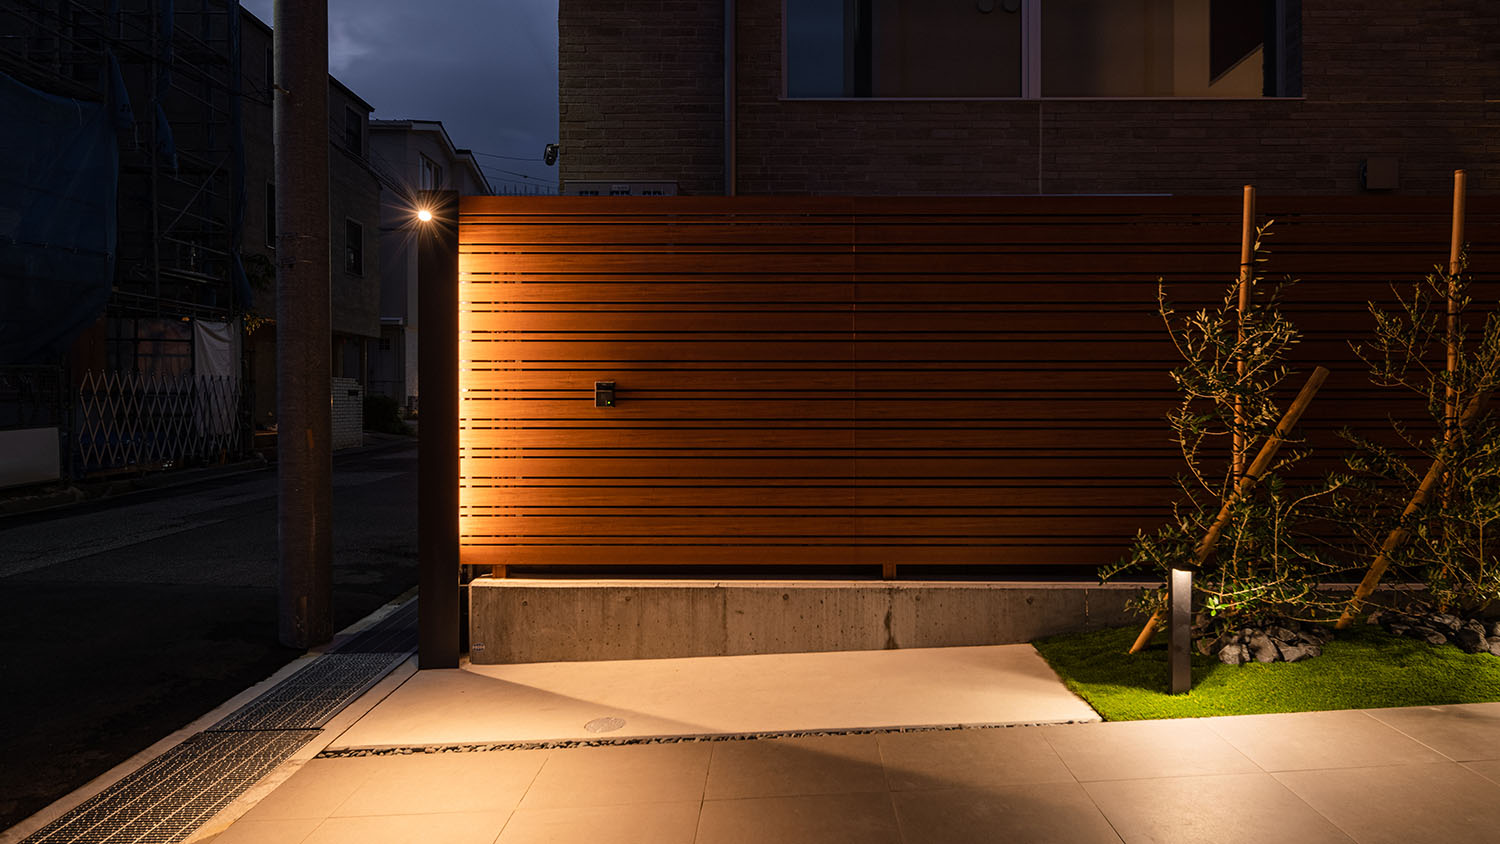 間接照明によって木の外構が照らされる住宅の外観・デザイン住宅